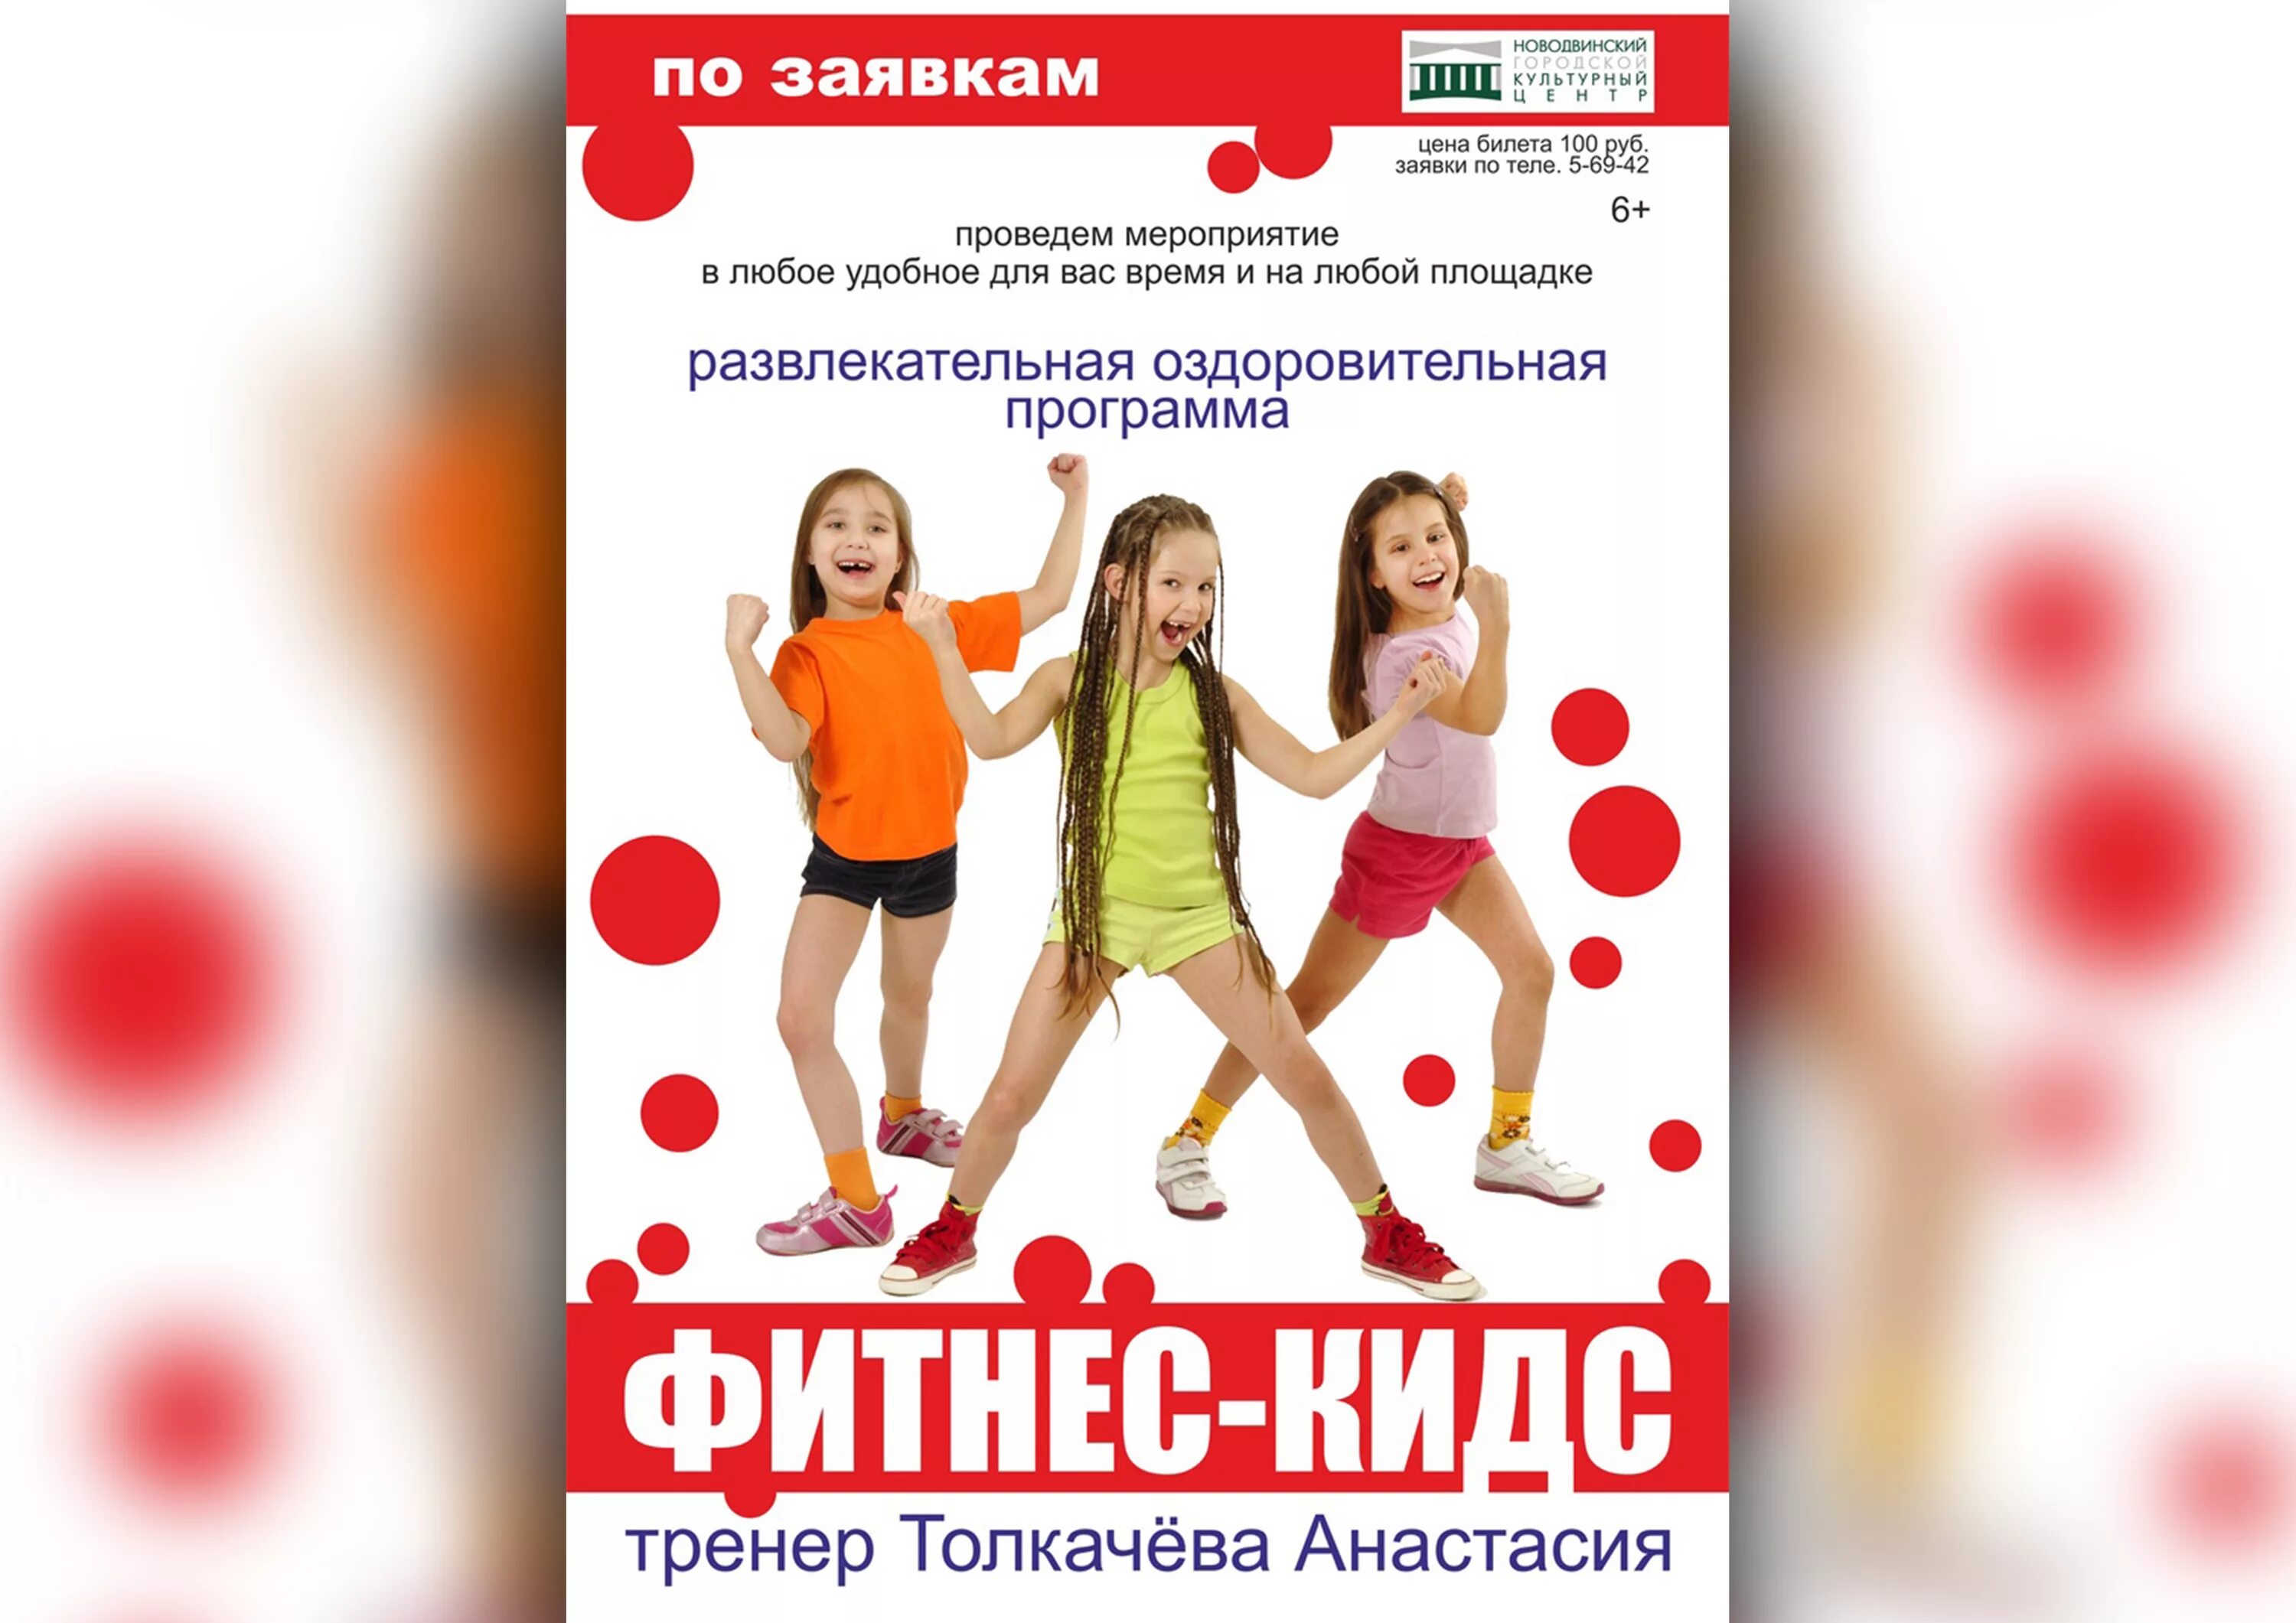 Российские программы для детей. Детский фитнес. Фитнес для детей реклама. Название детского фитнеса. Объявление фитнес для детей.